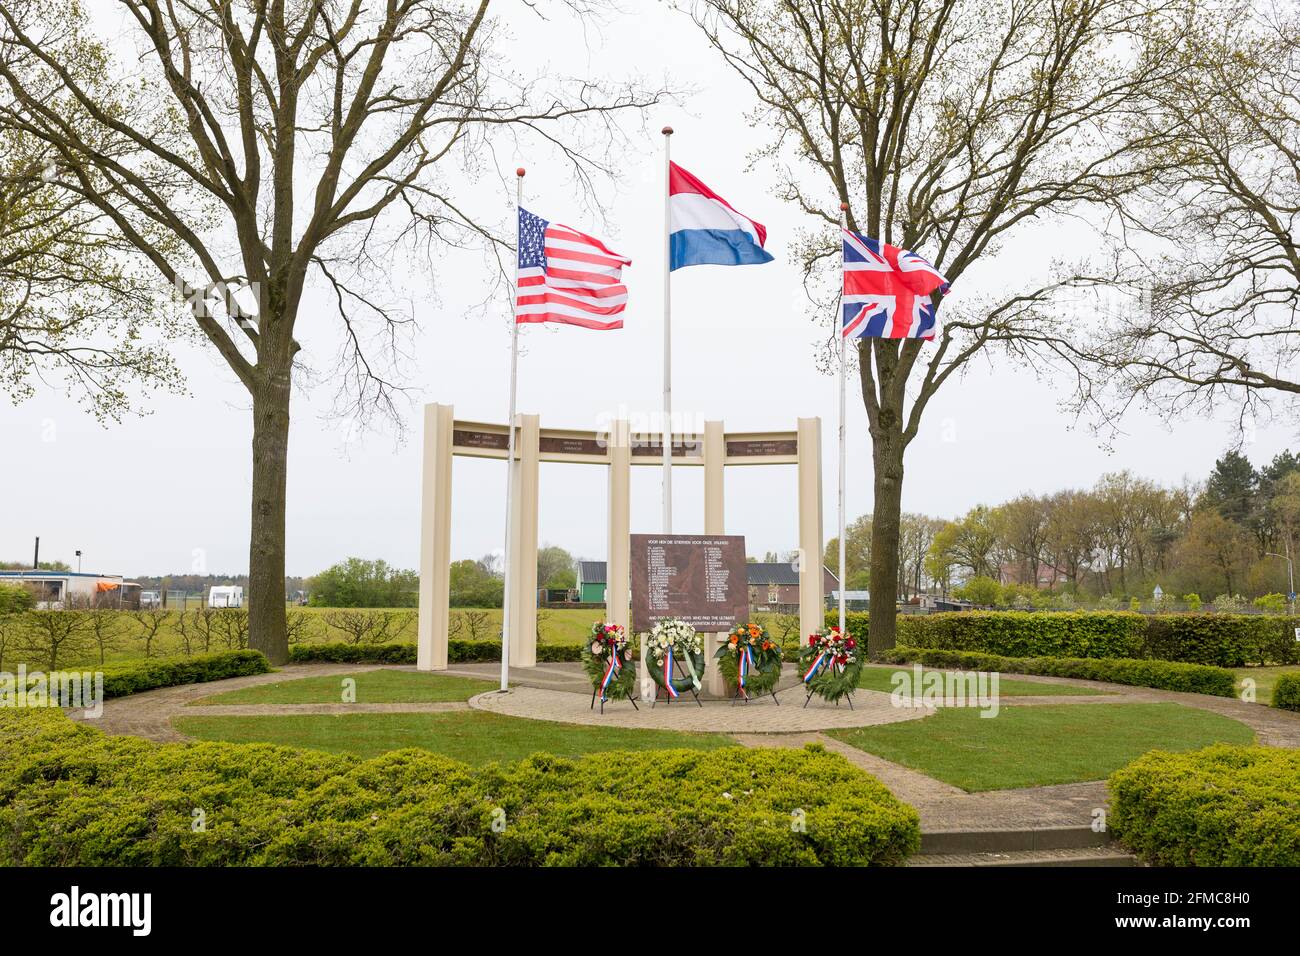 BANDIERA STATUNITENSE, britannica e olandese sventolando al monumento commemorativo per soldati caduti e civili durante la liberazione di Liessel, Paesi Bassi Foto Stock